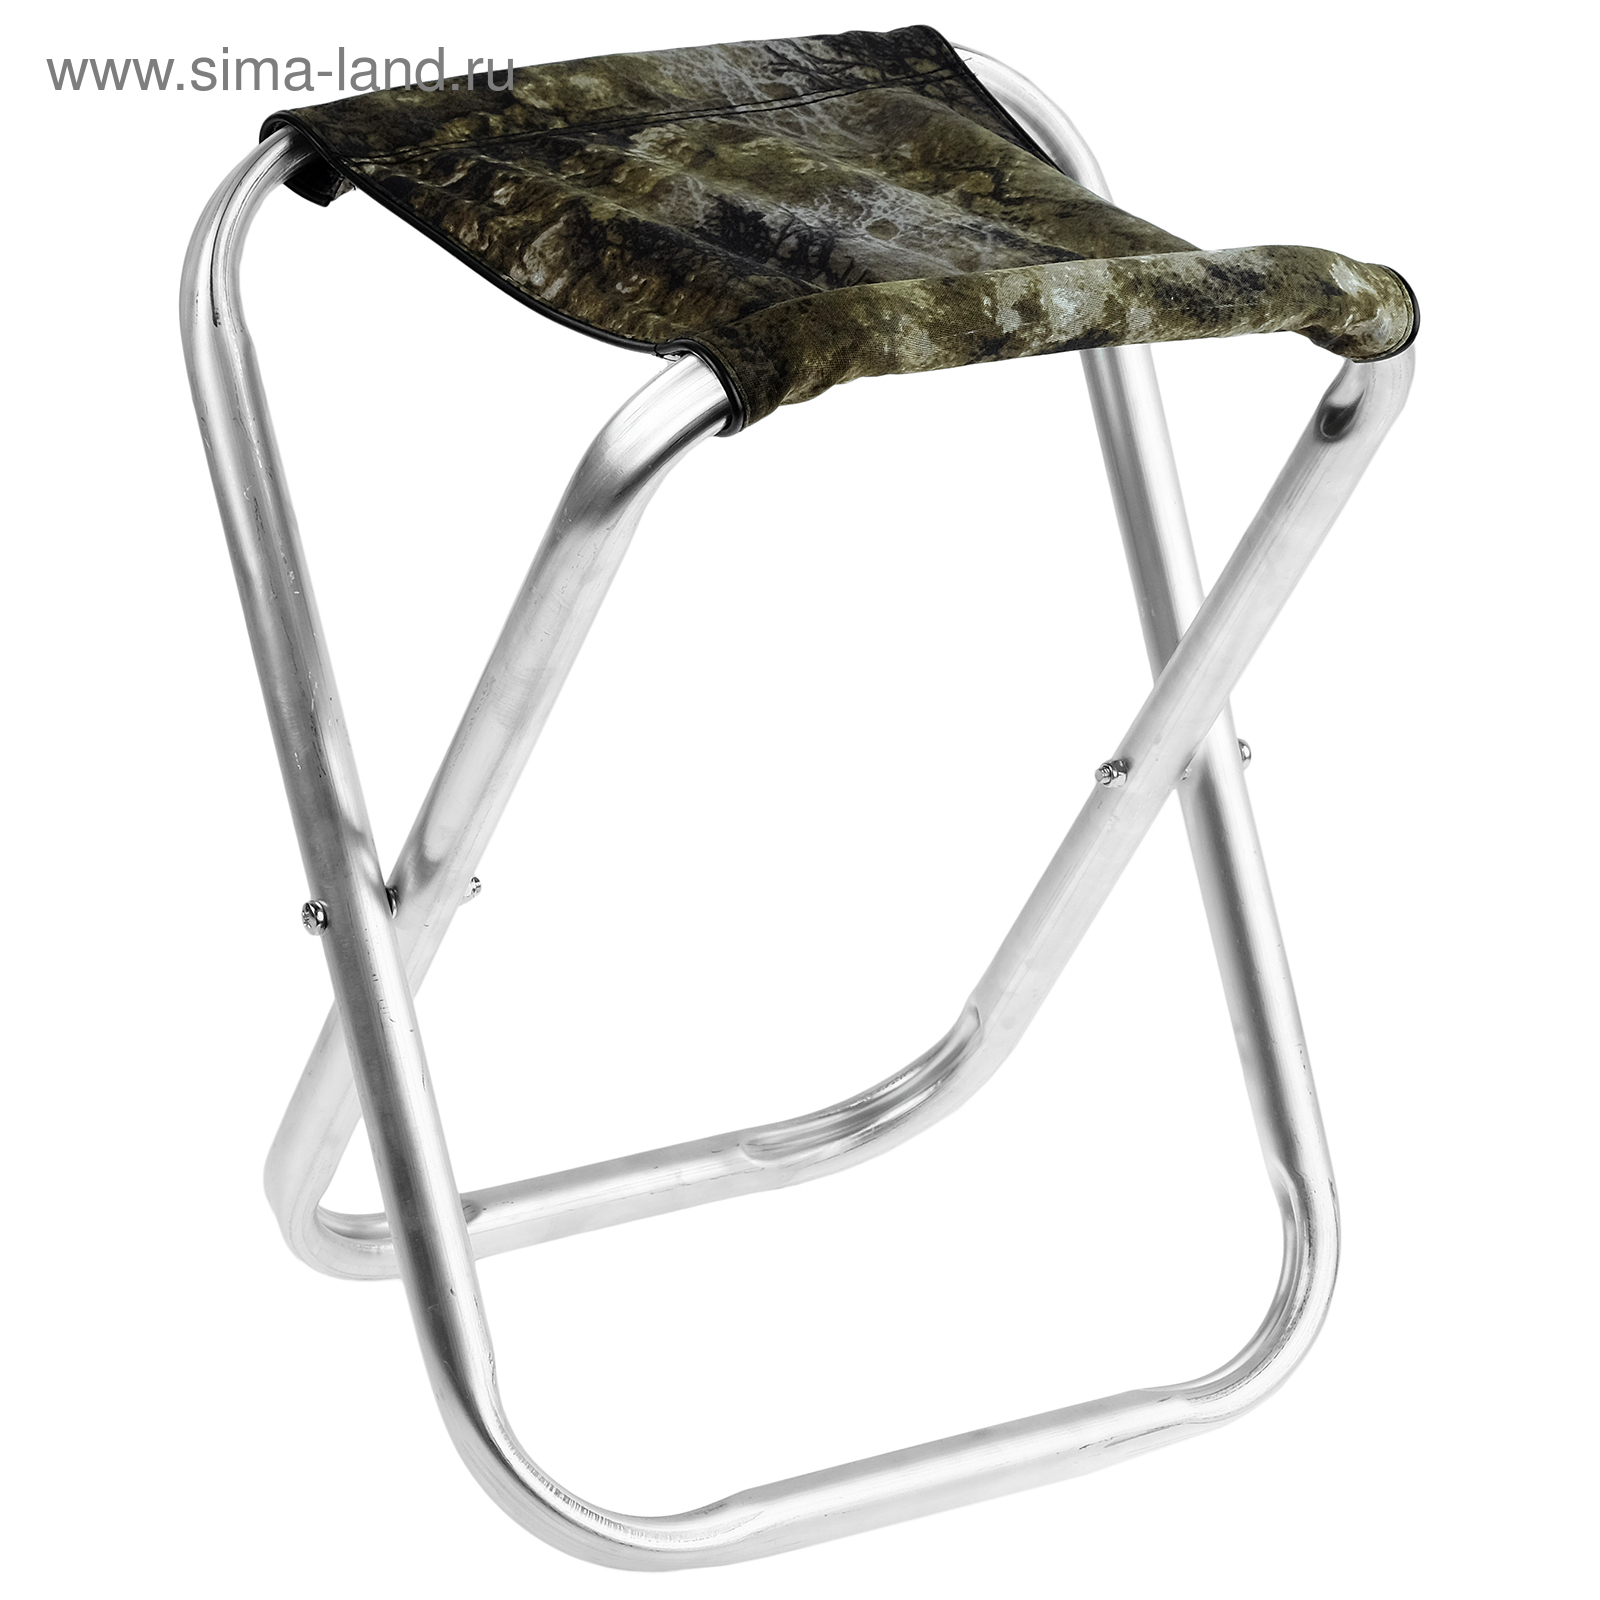 Алюминиевые складные стулья. Стул рыбацкий до 150 кг. Стульчик складной DW-1010b без спинки 32x27x34 см (полосатый)993079. Стул туристический алюминиевый. Стул складной туристический алюминиевый.